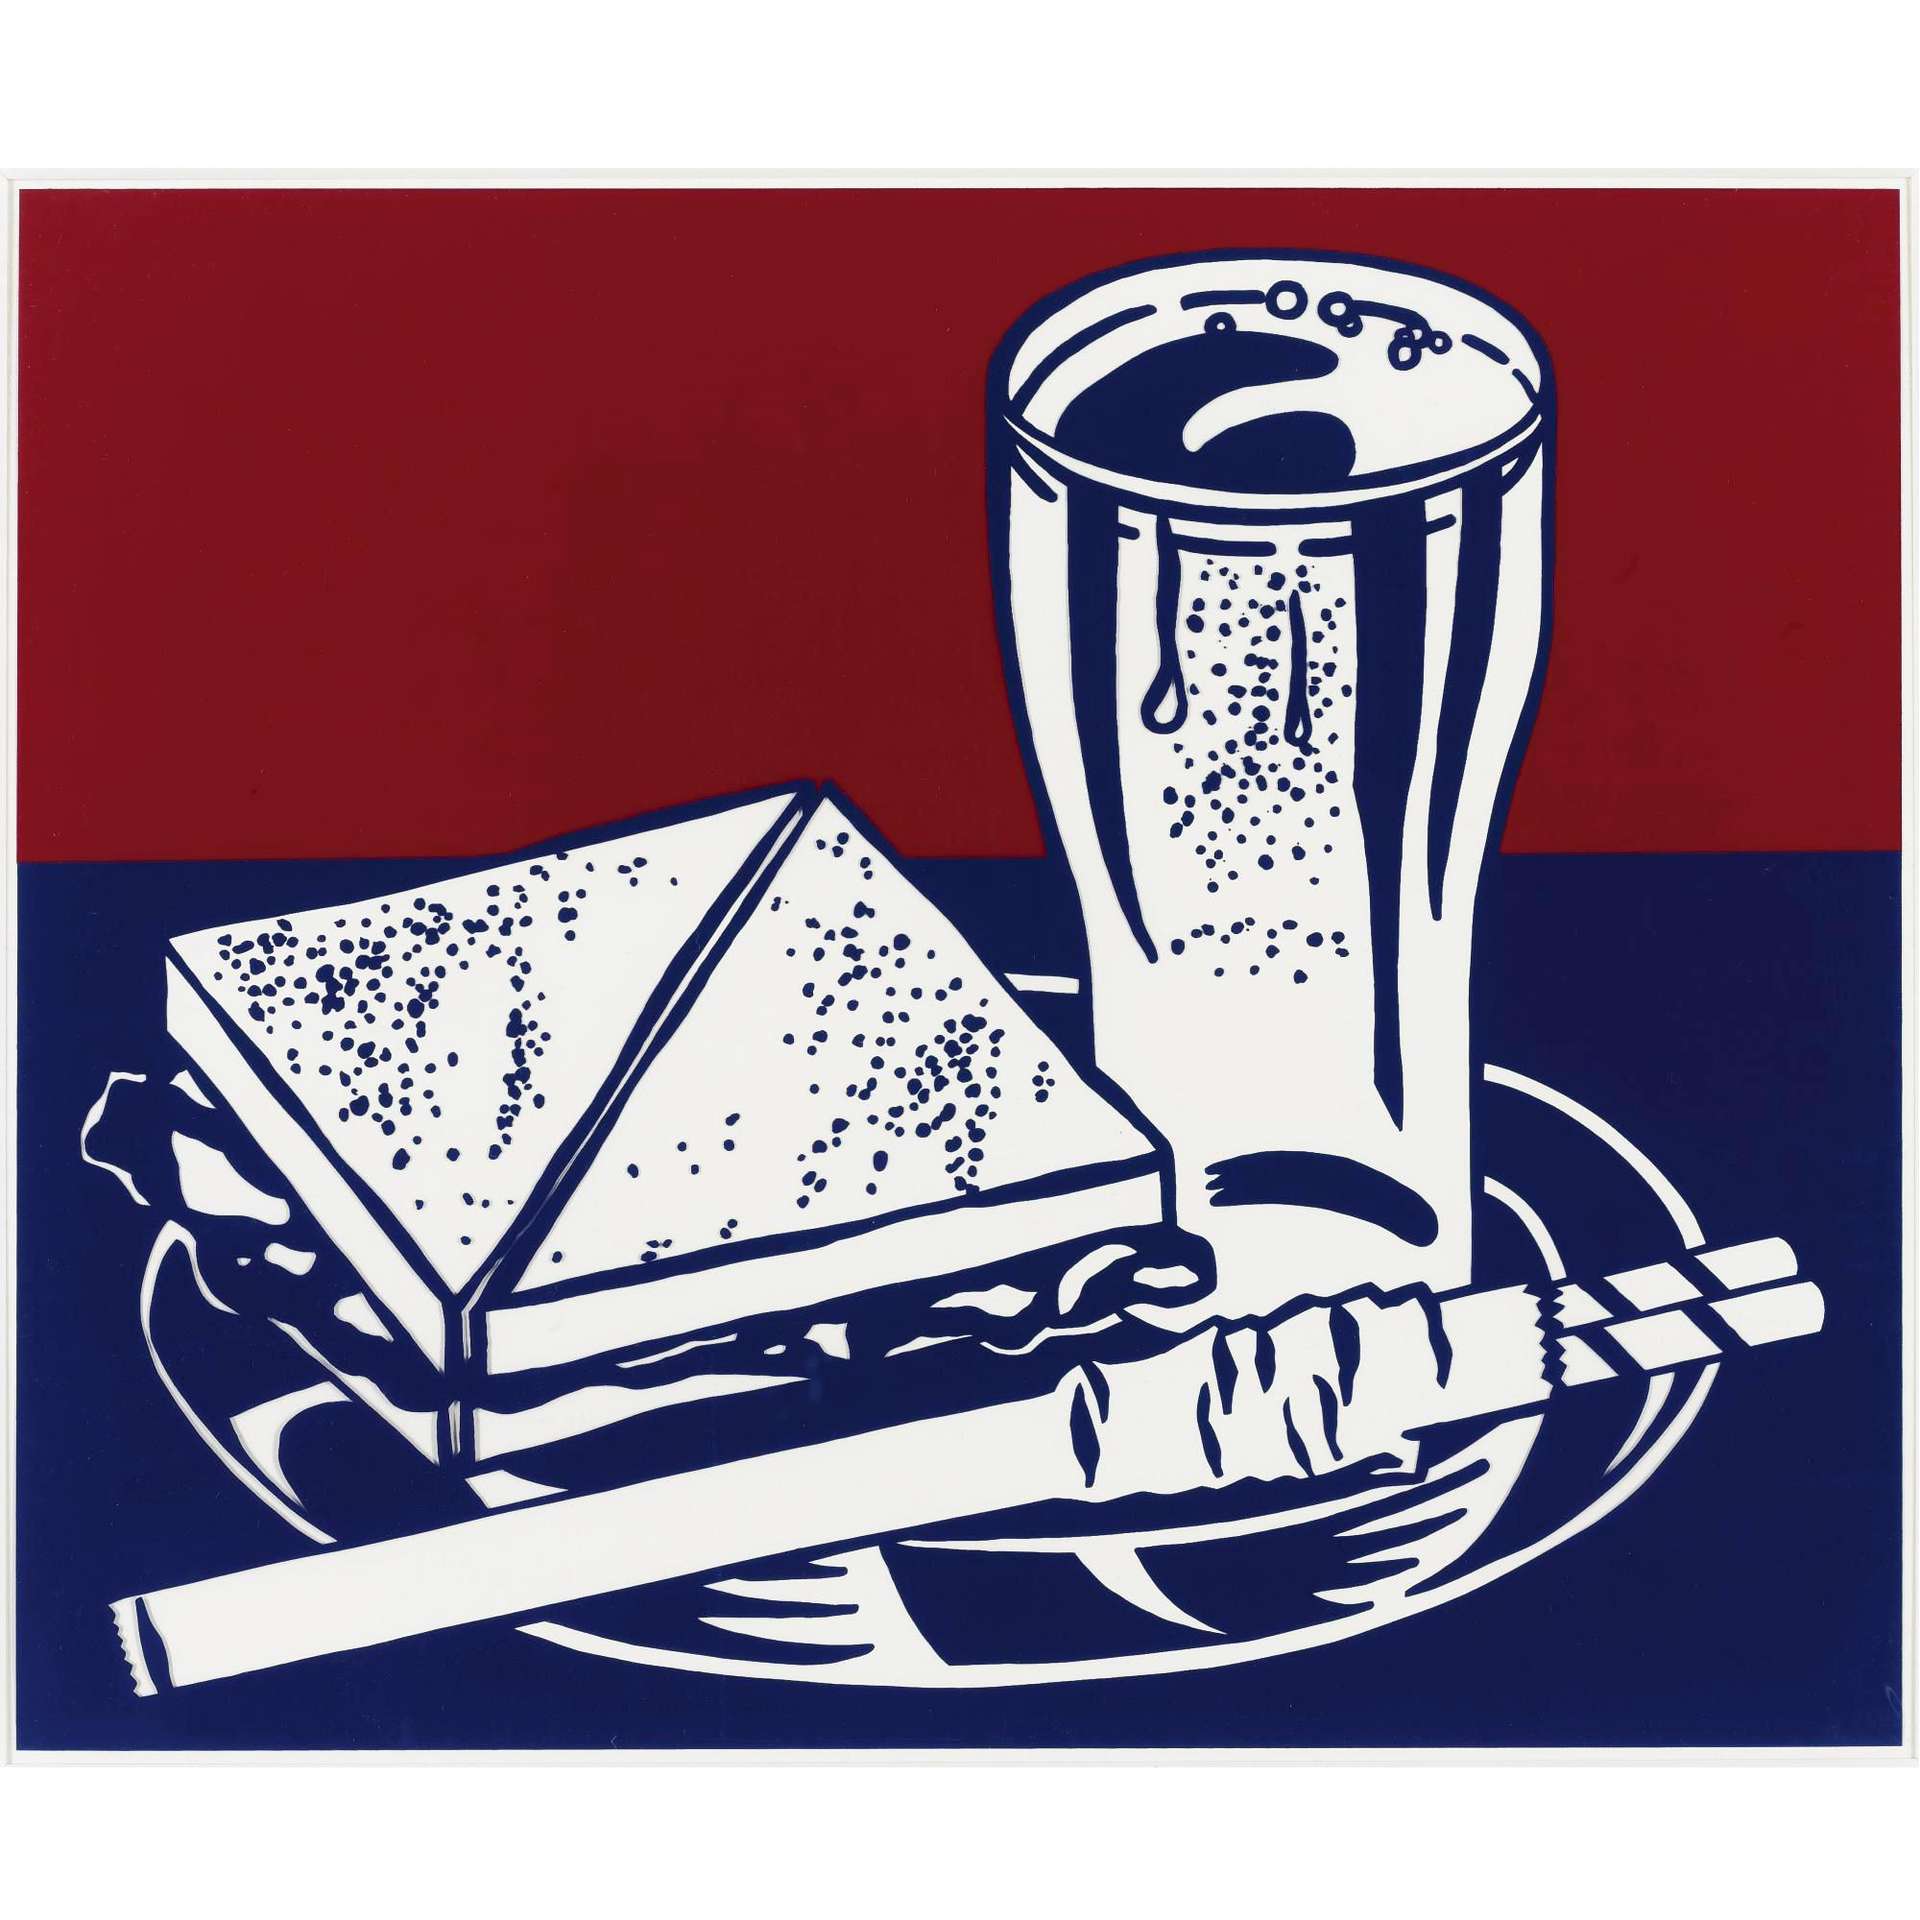 Sandwich And Soda - Unsigned Print by Roy Lichtenstein 1964 - MyArtBroker